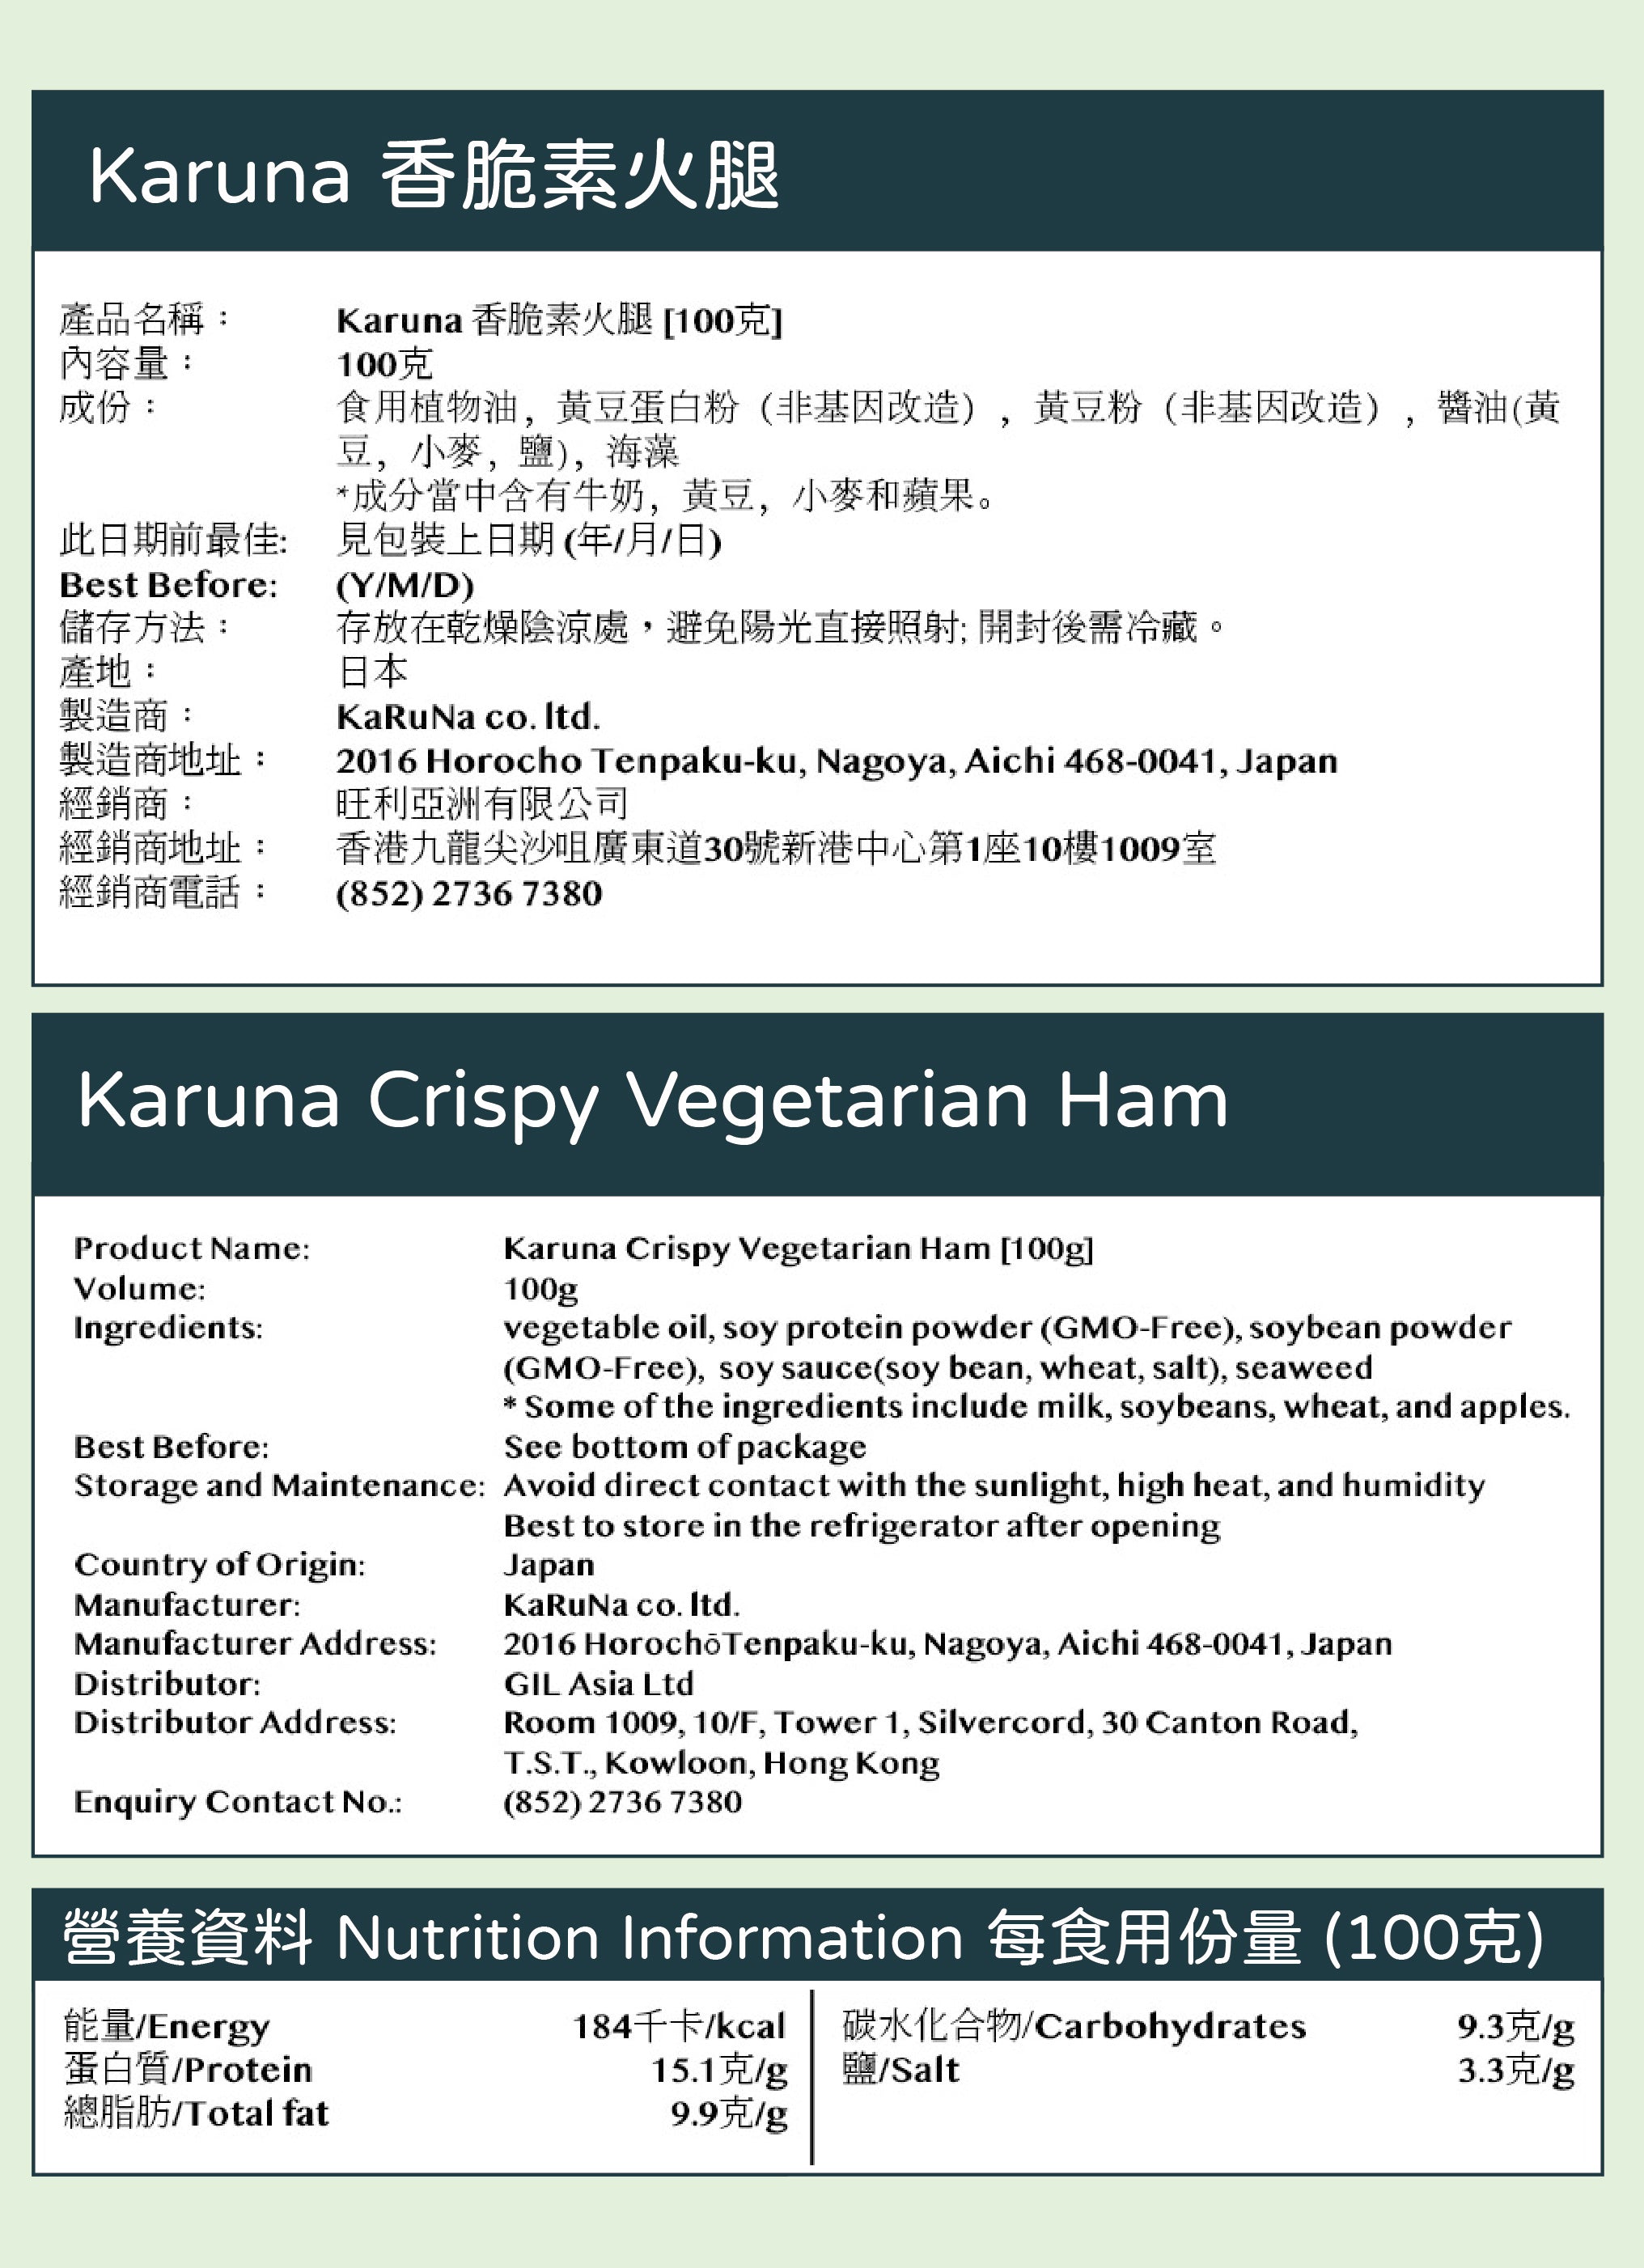 Karuna Crispy Vegetarian Ham [100g]